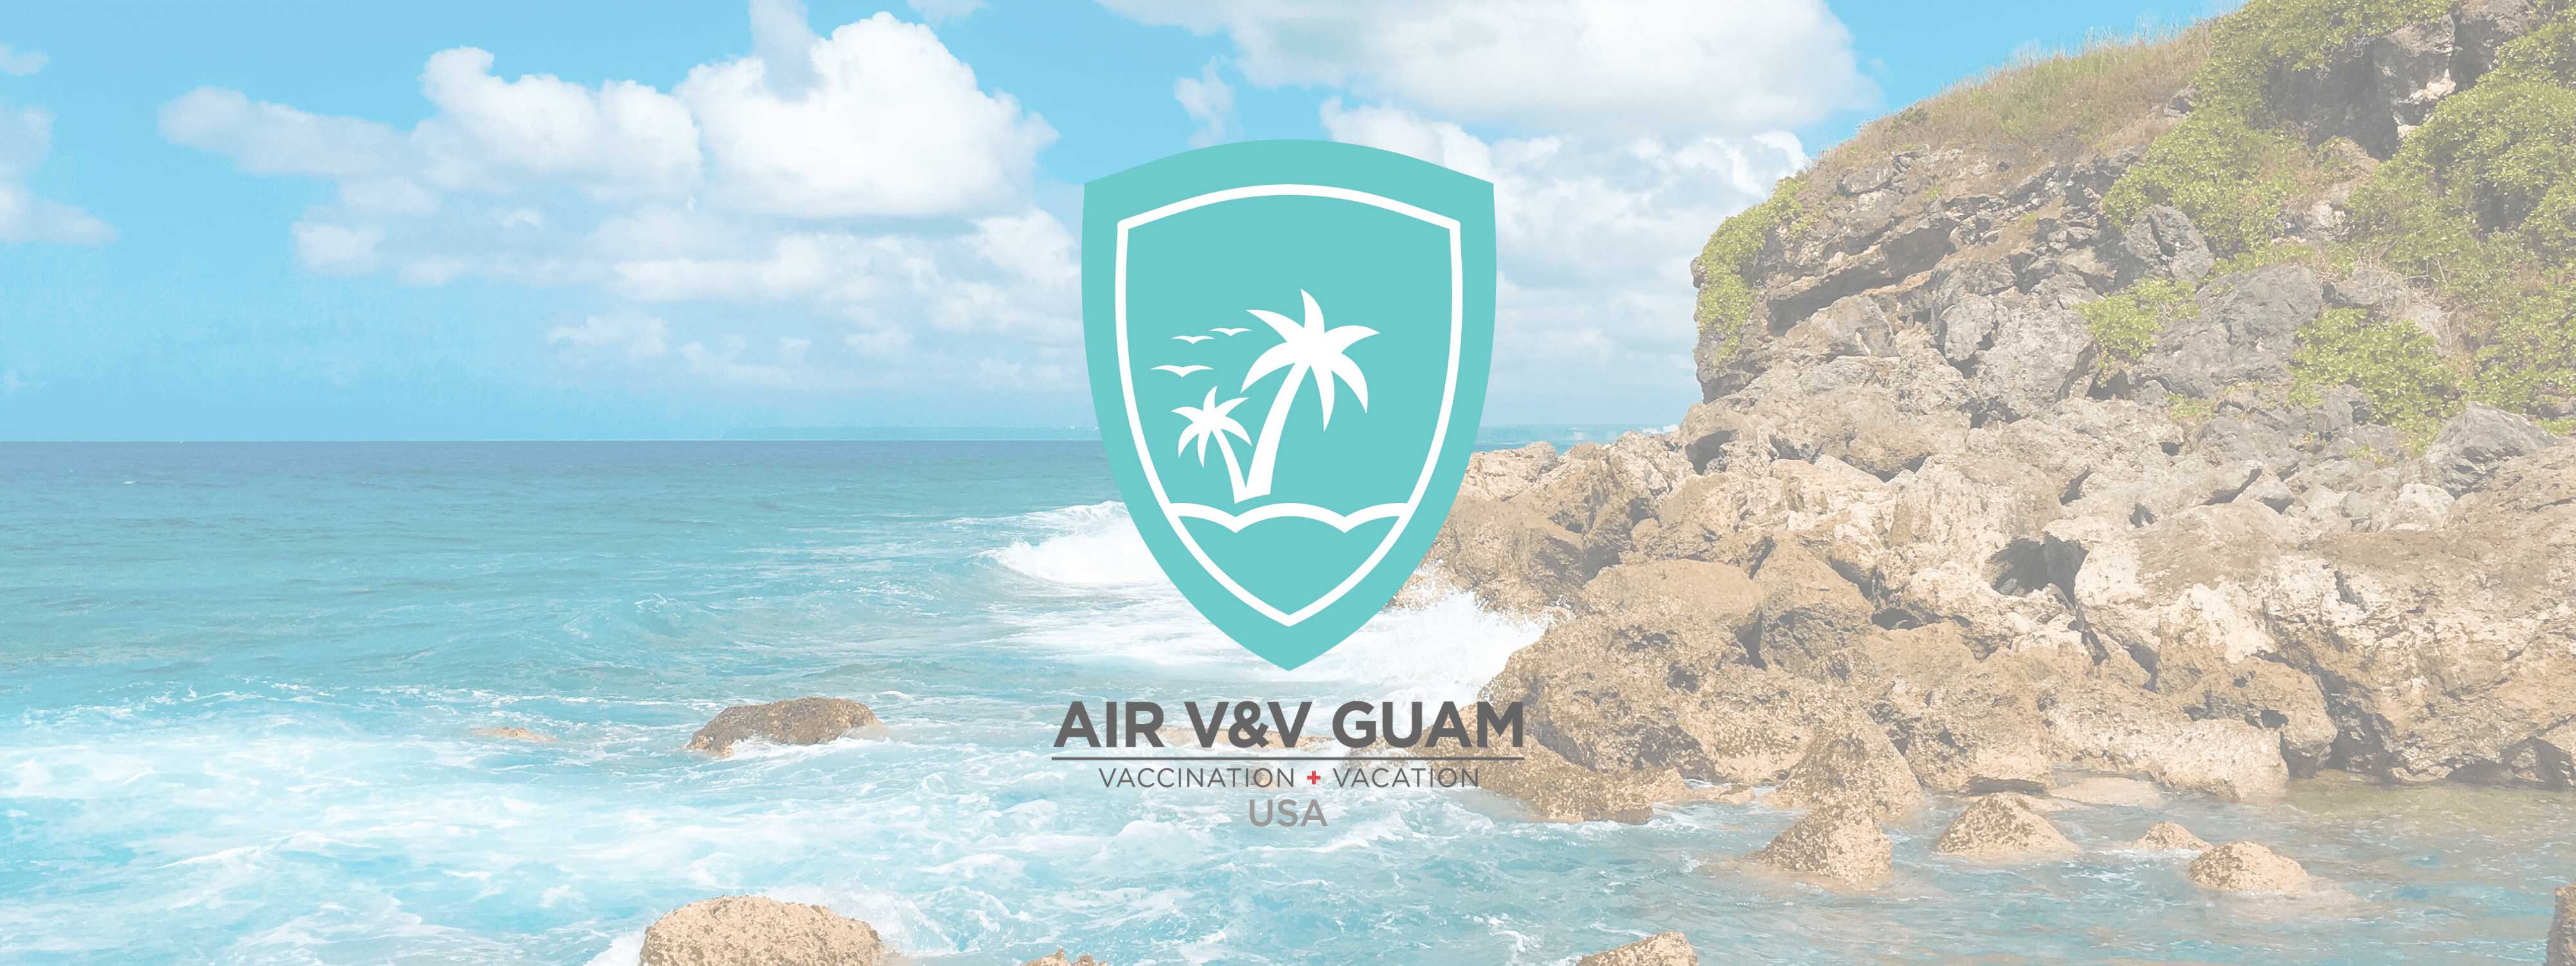 Air V&V: Guam's Vaccine Tourism Program - Everything You Need to Know